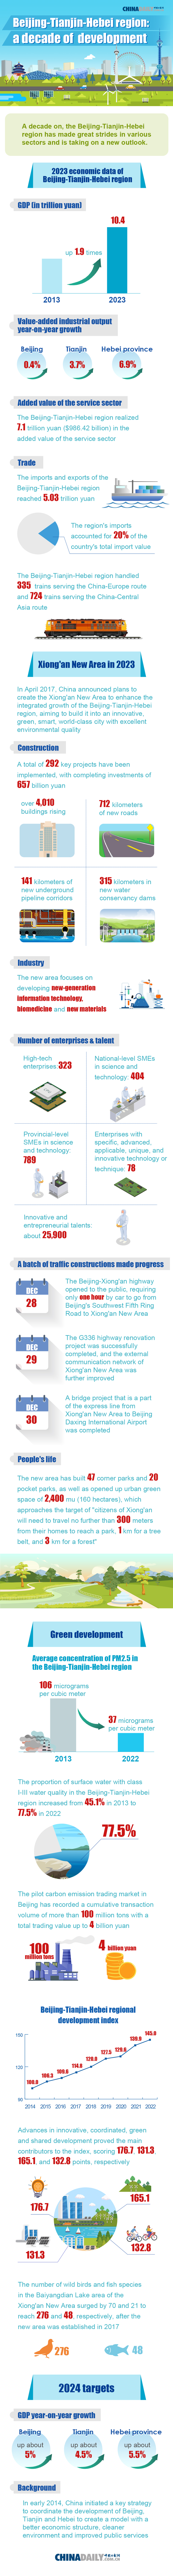 Beijng-Tianjin-Hebei region: a decade of development